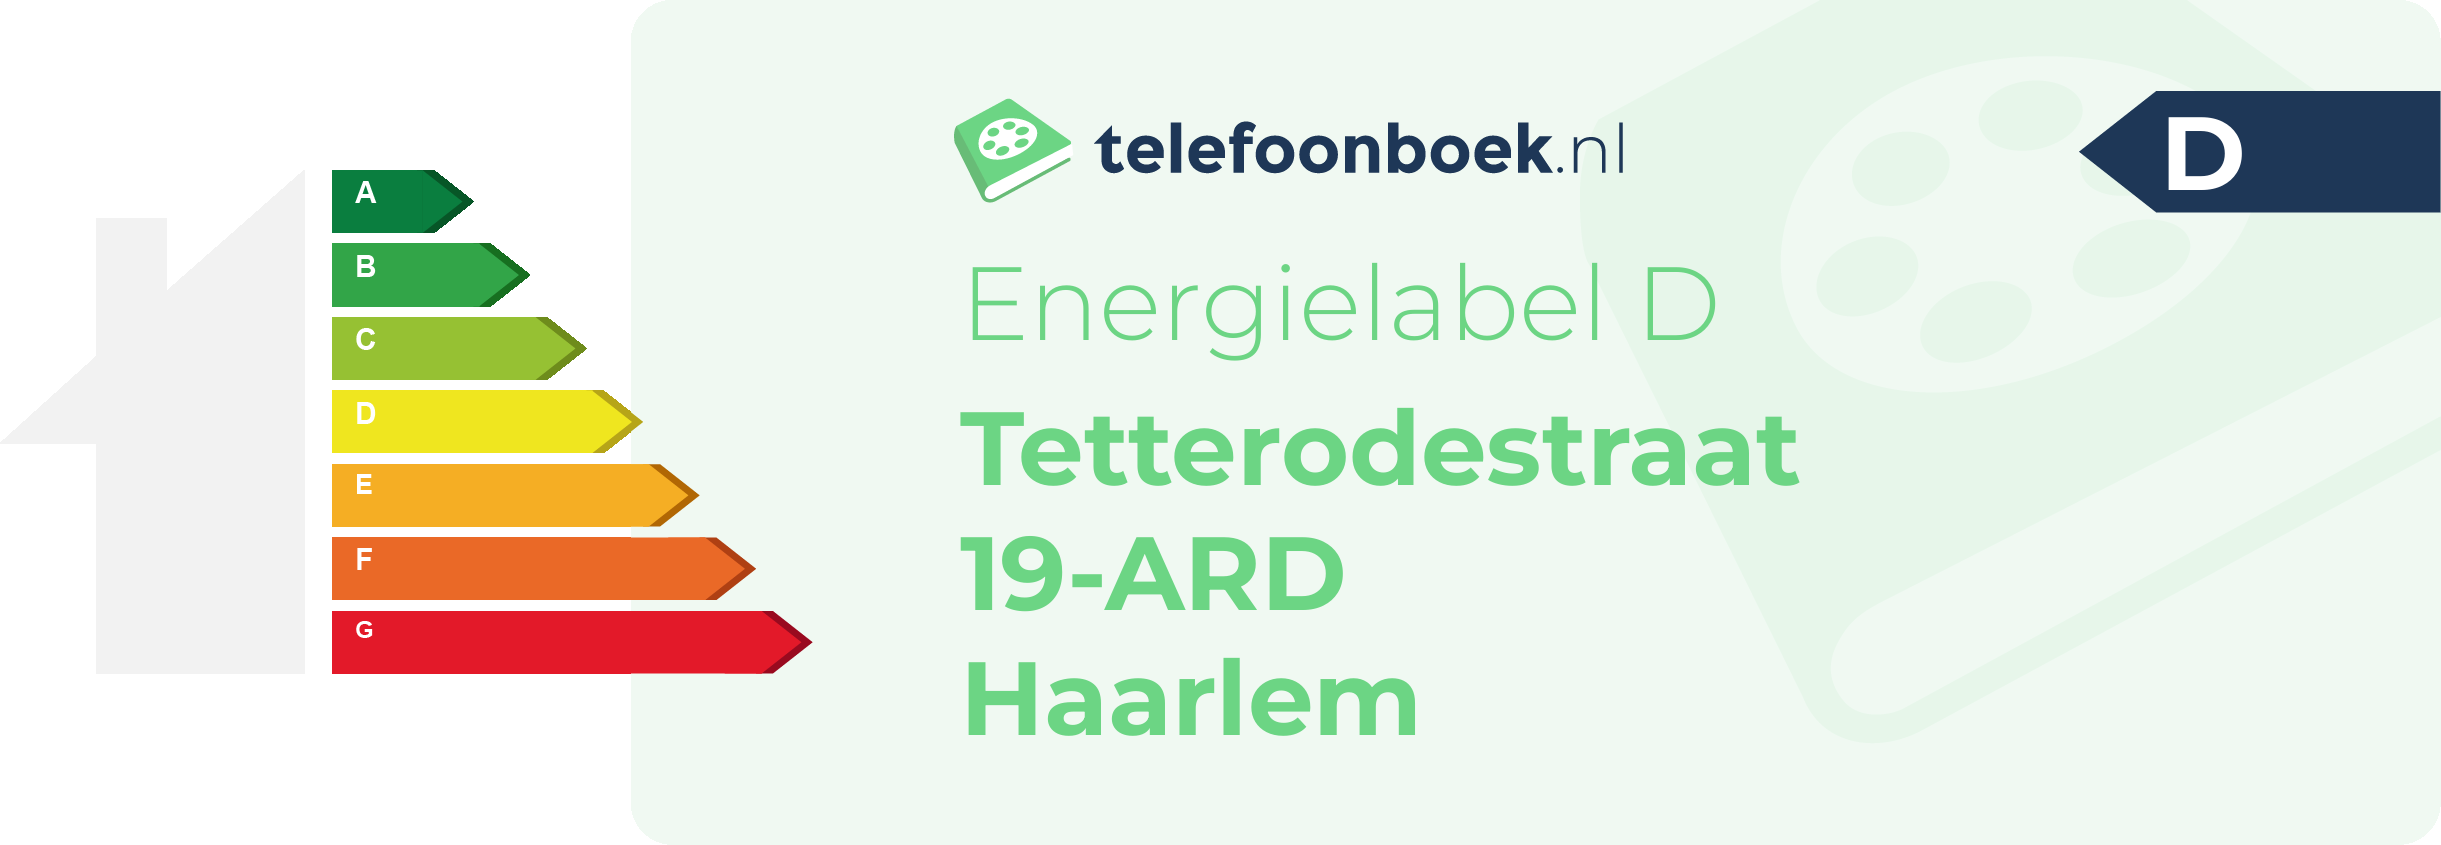 Energielabel Tetterodestraat 19-ARD Haarlem